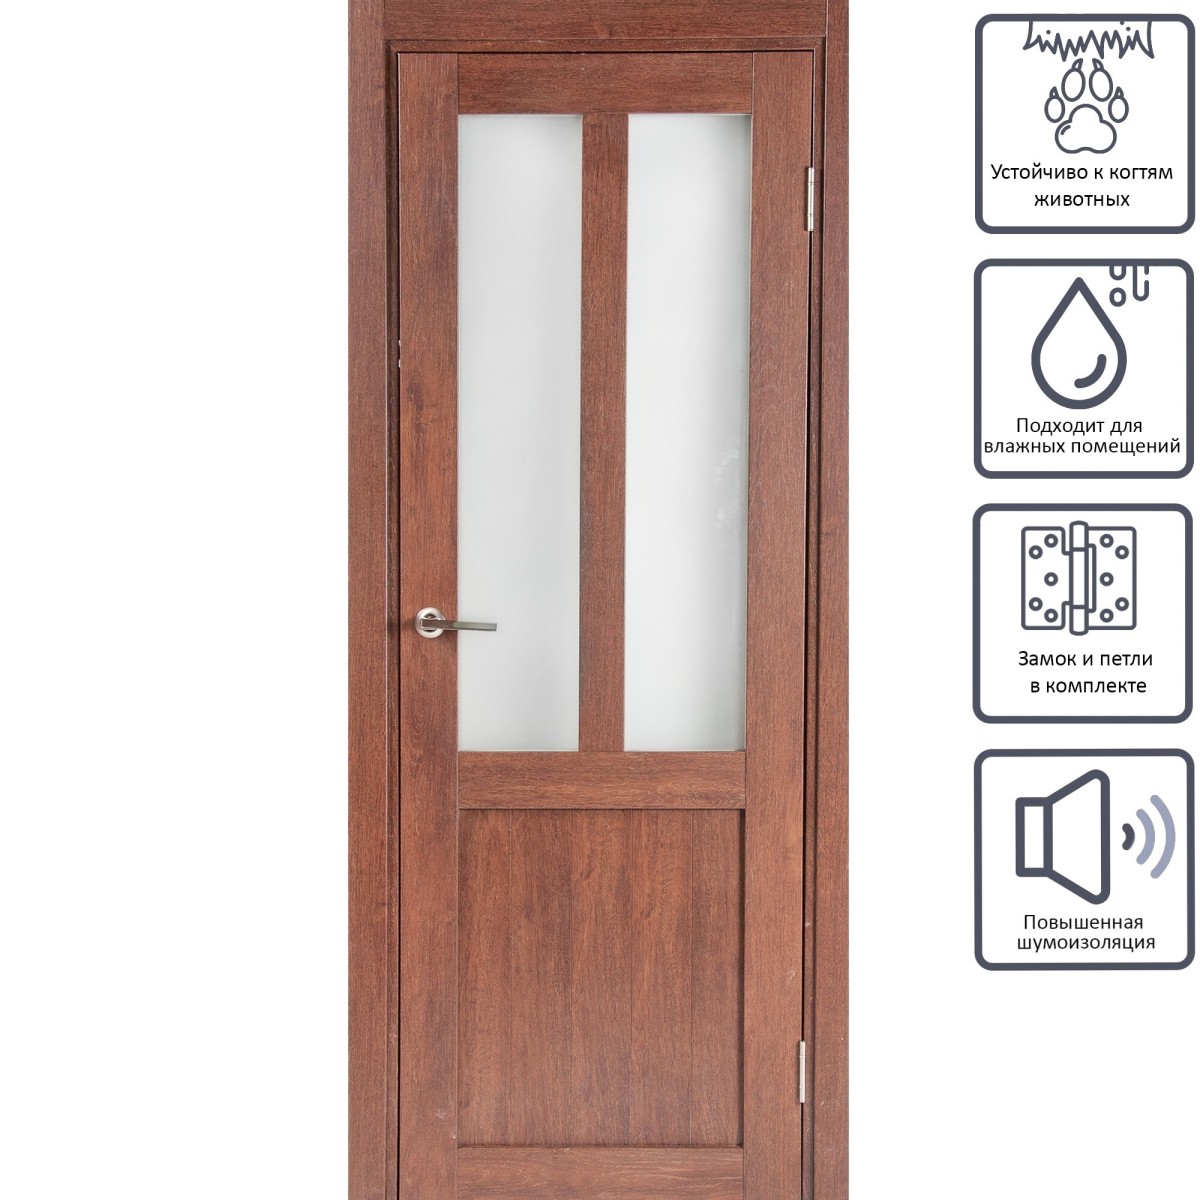 Дверь межкомнатная остеклённая Кантри 80x200 см, ПВХ, цвет дуб сан-томе, с фурнитурой